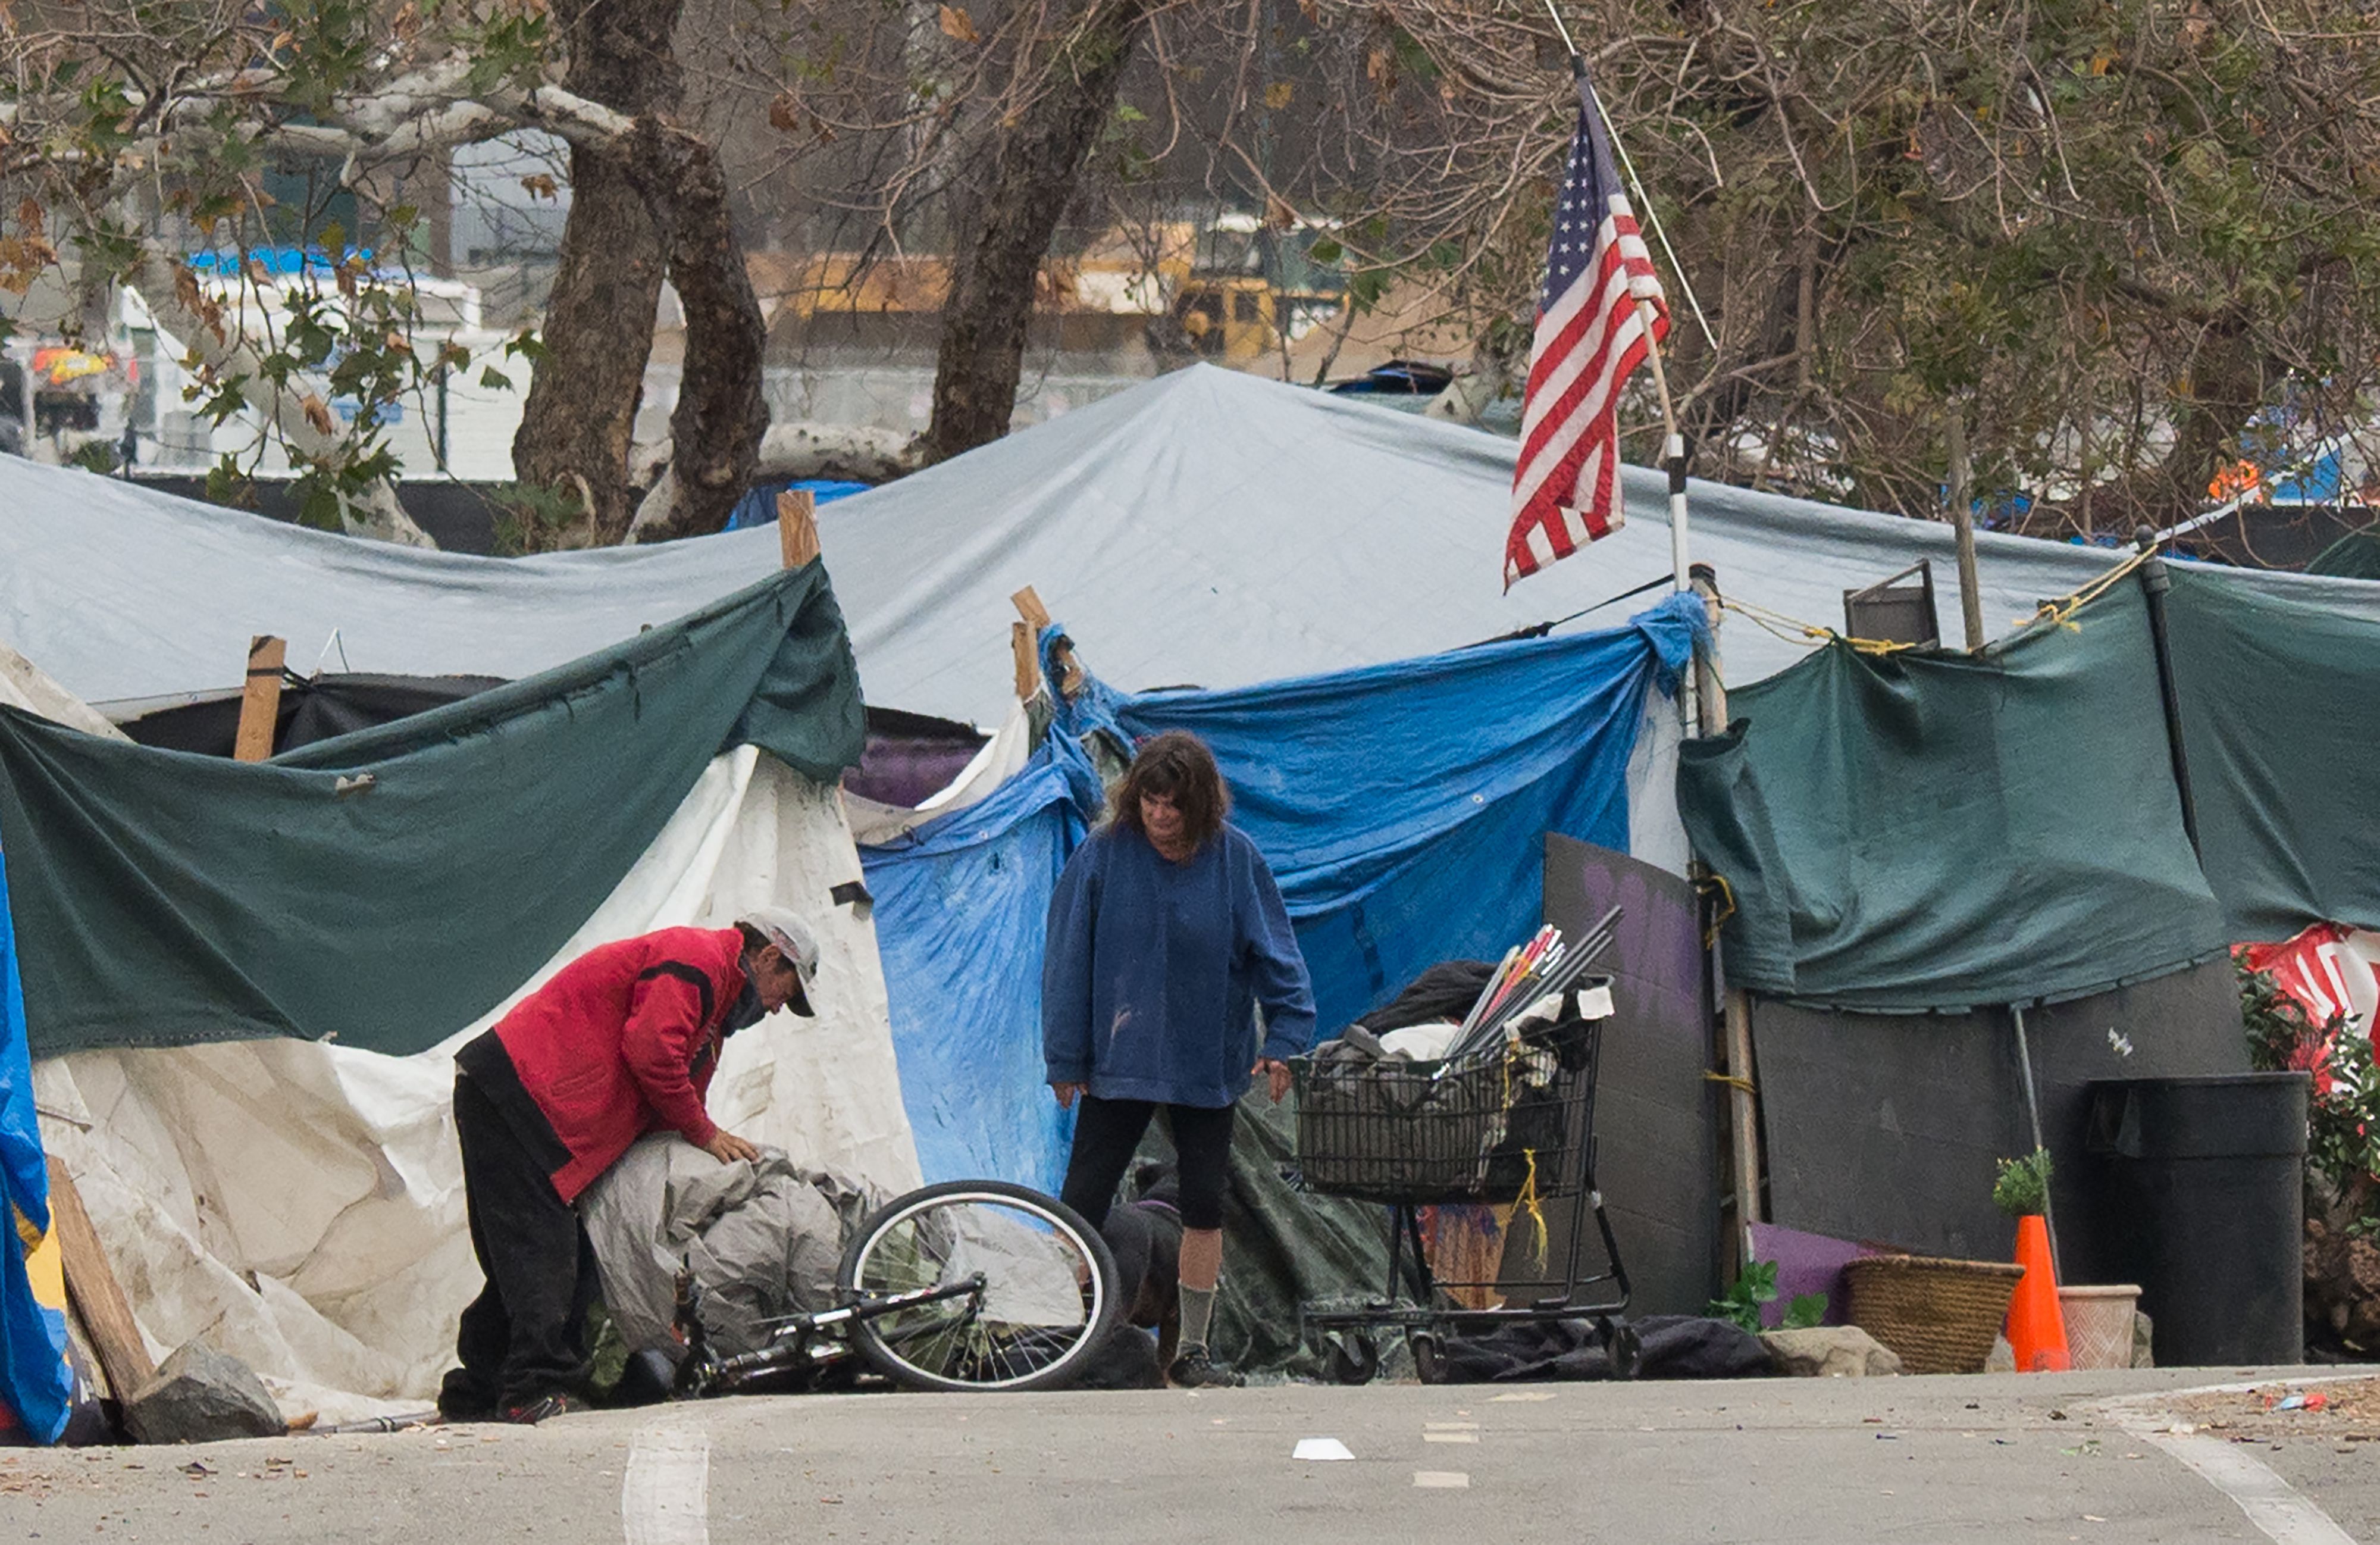 Бомжи в палатке. Палатки бездомных в Лос-Анджелесе с флагом США.